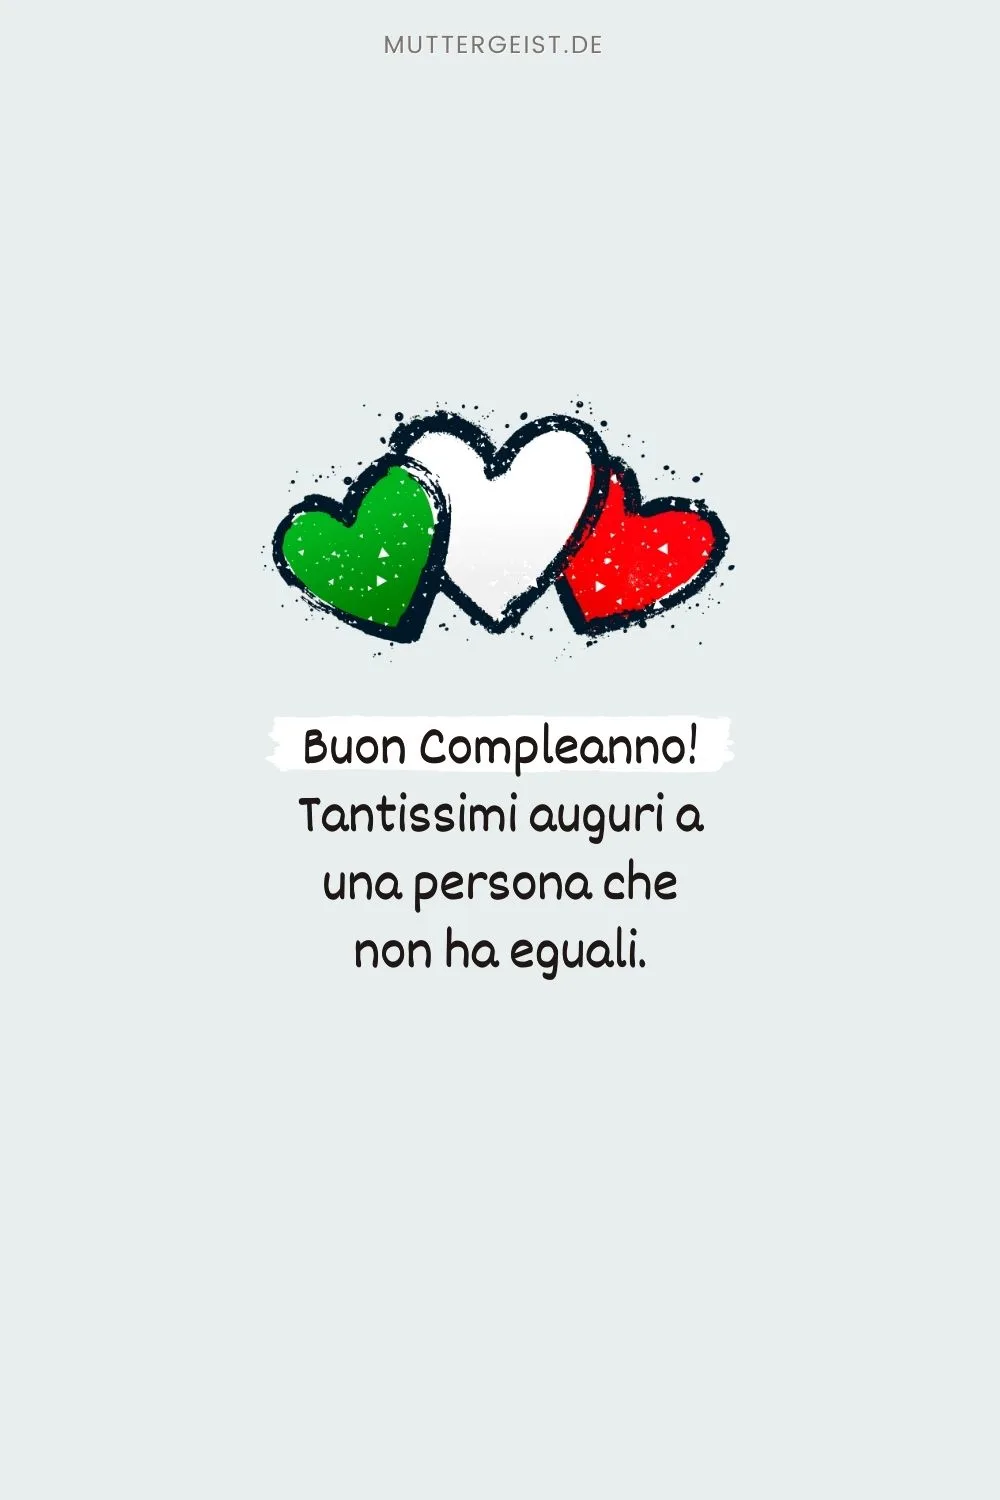 Zitat zum Geburtstag auf italienisch: “Buon Compleanno! Tantissimi auguri a una persona che non ha eguali.”